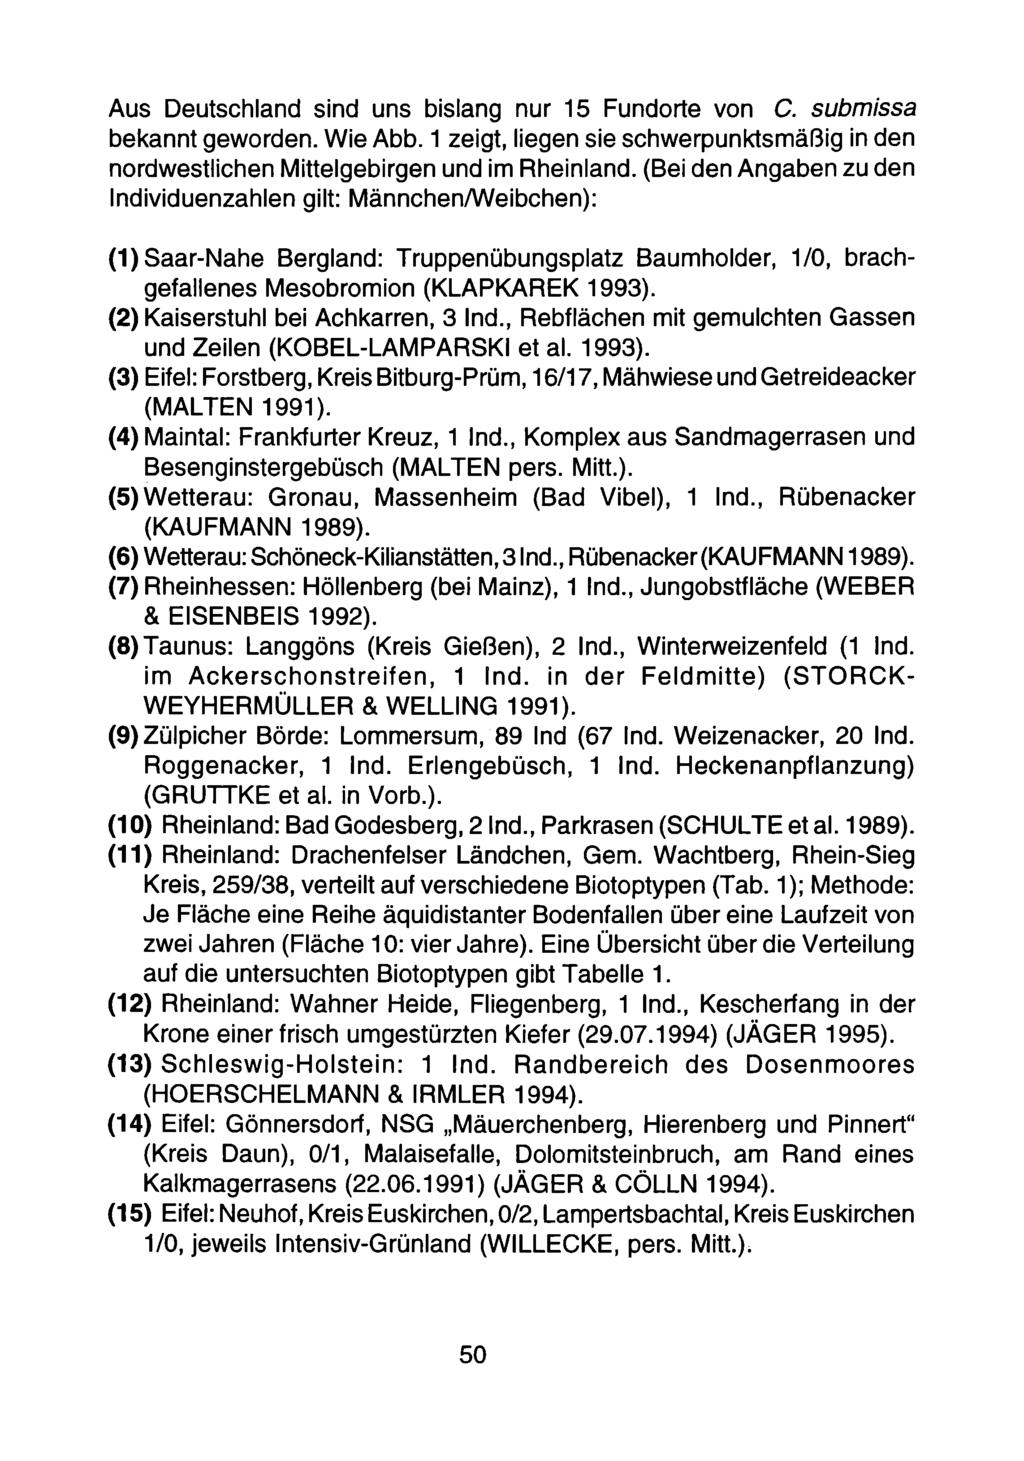 Aus Deutschland sind uns bislang nur 15 Fundorte von C. submissa bekannt geworden. Wie Abb. 1 zeigt, liegen sie schwerpunktsmäßig in den nordwestlichen Mittelgebirgen und im Rheinland.